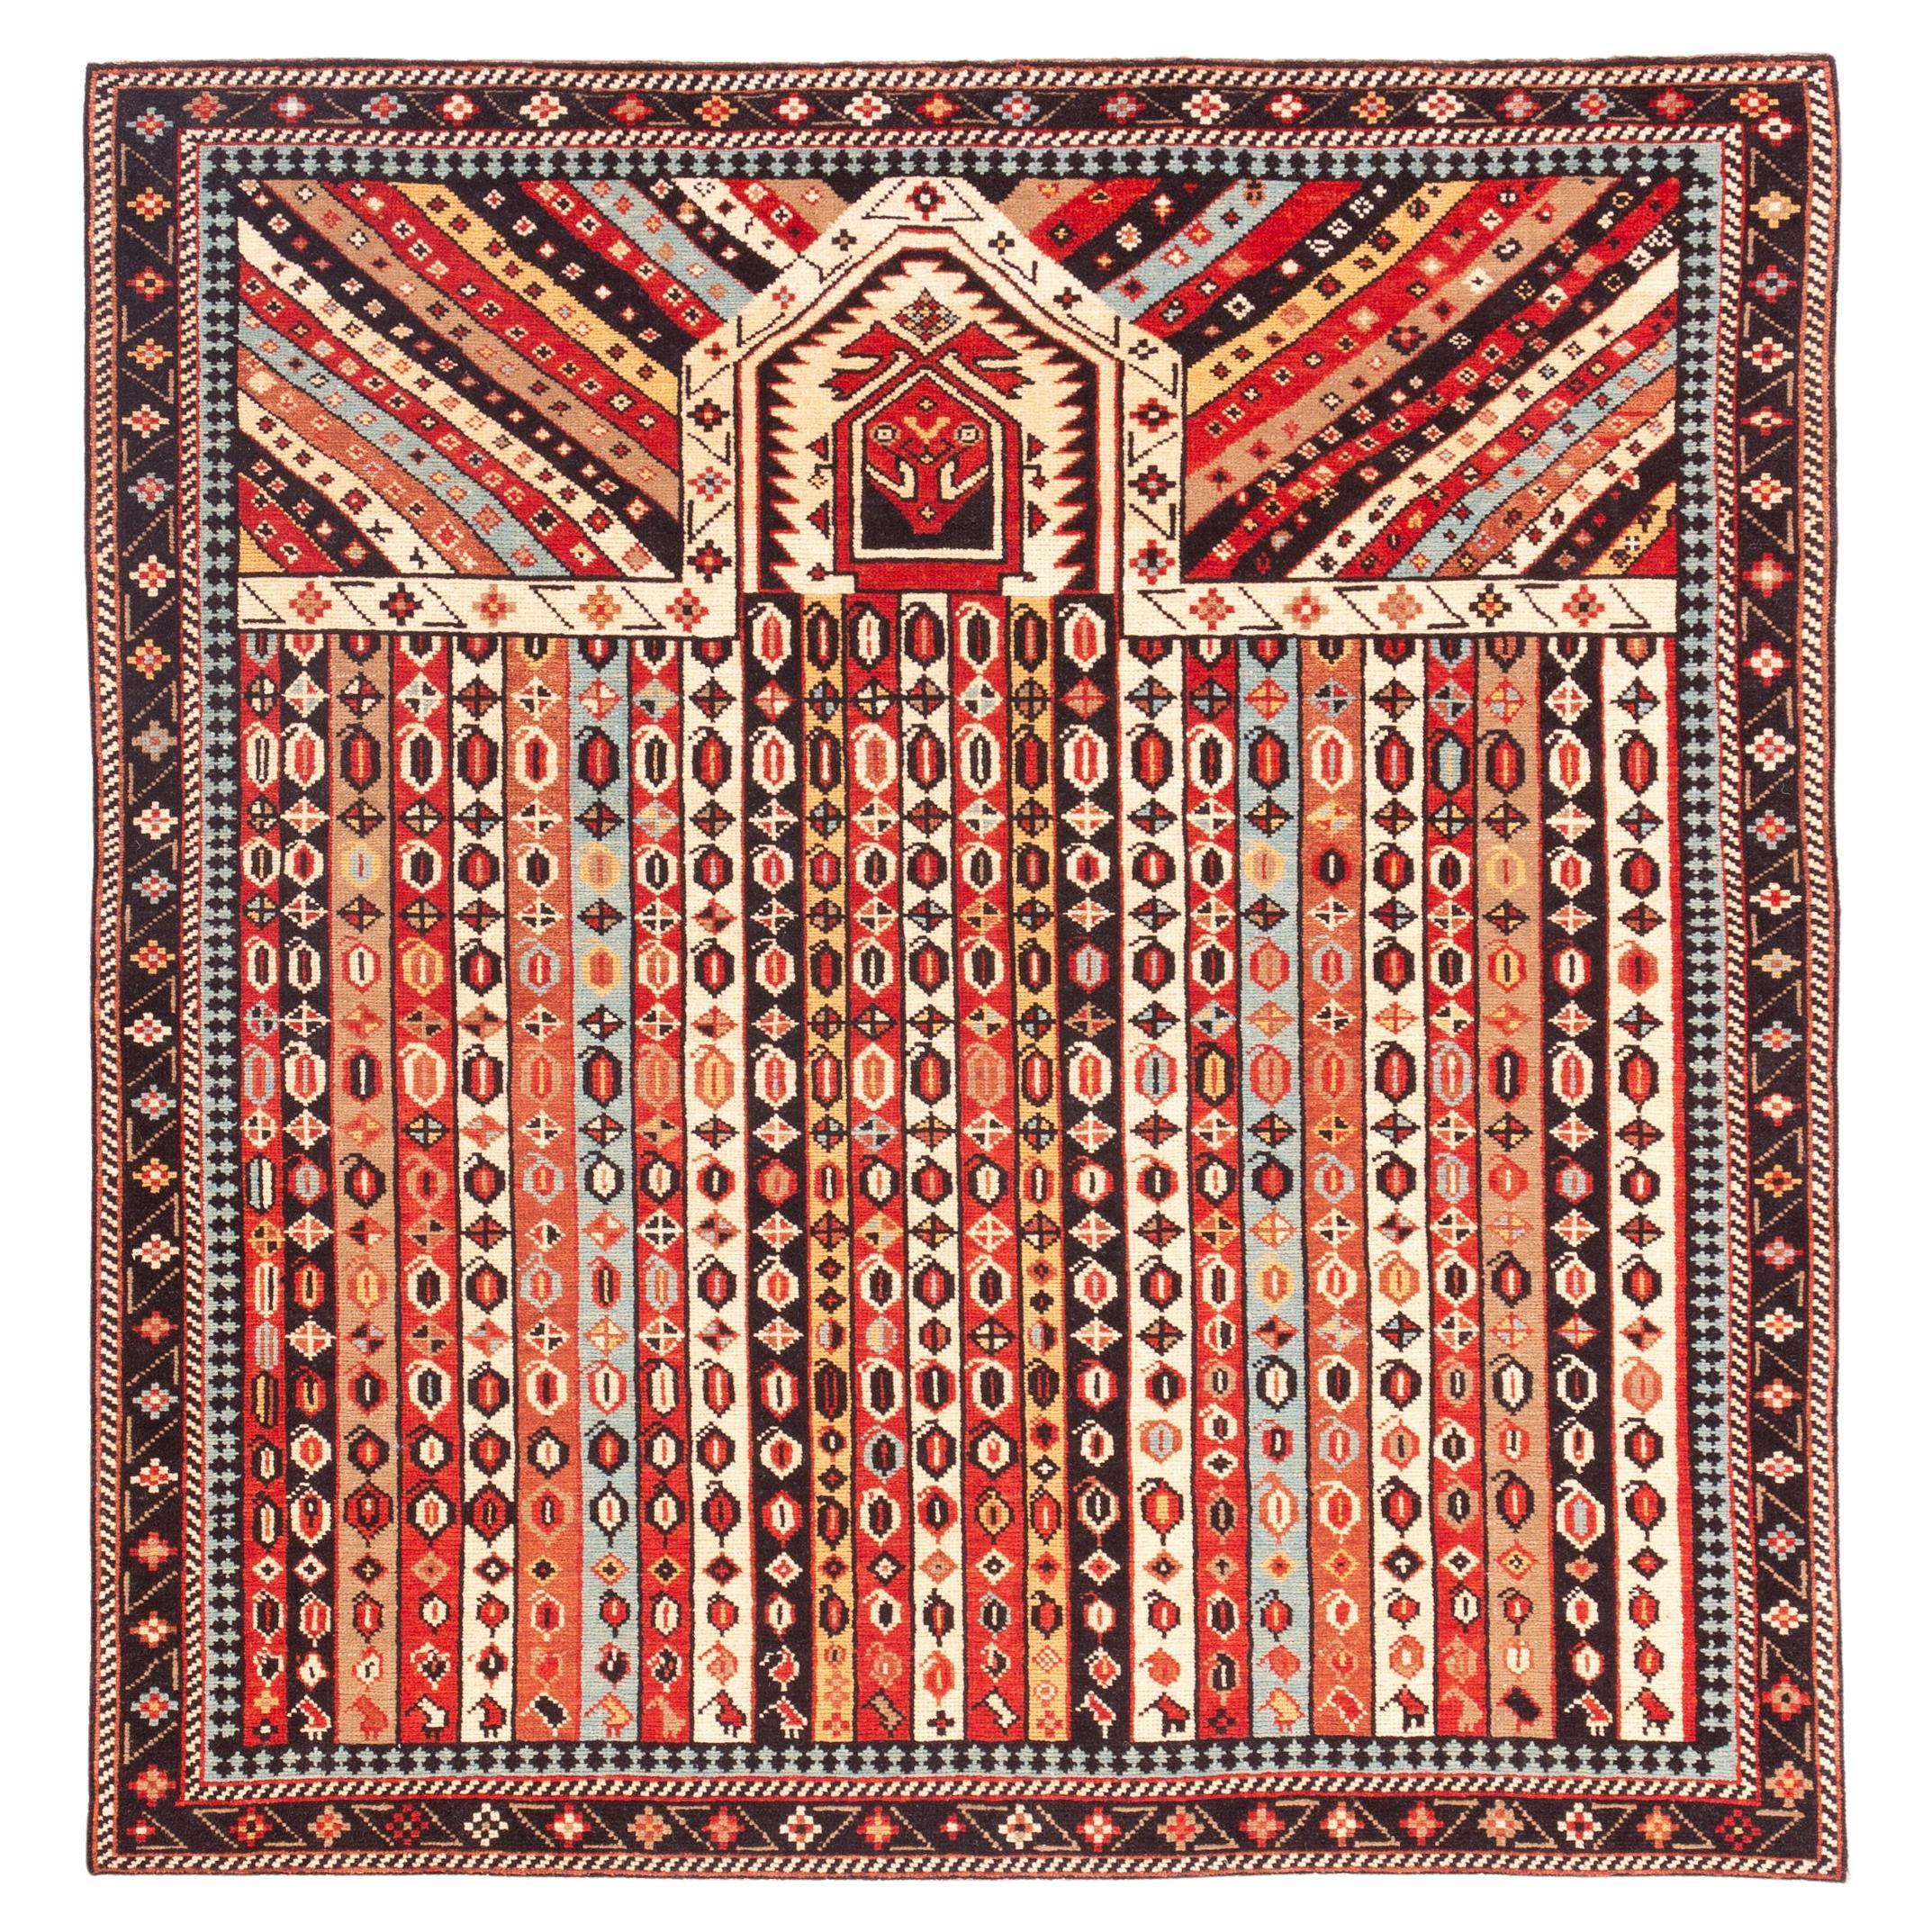 Ararat Rugs Karabagh Prayer Rug with Vertical Stripes Revival Carpet Natural Dye For Sale